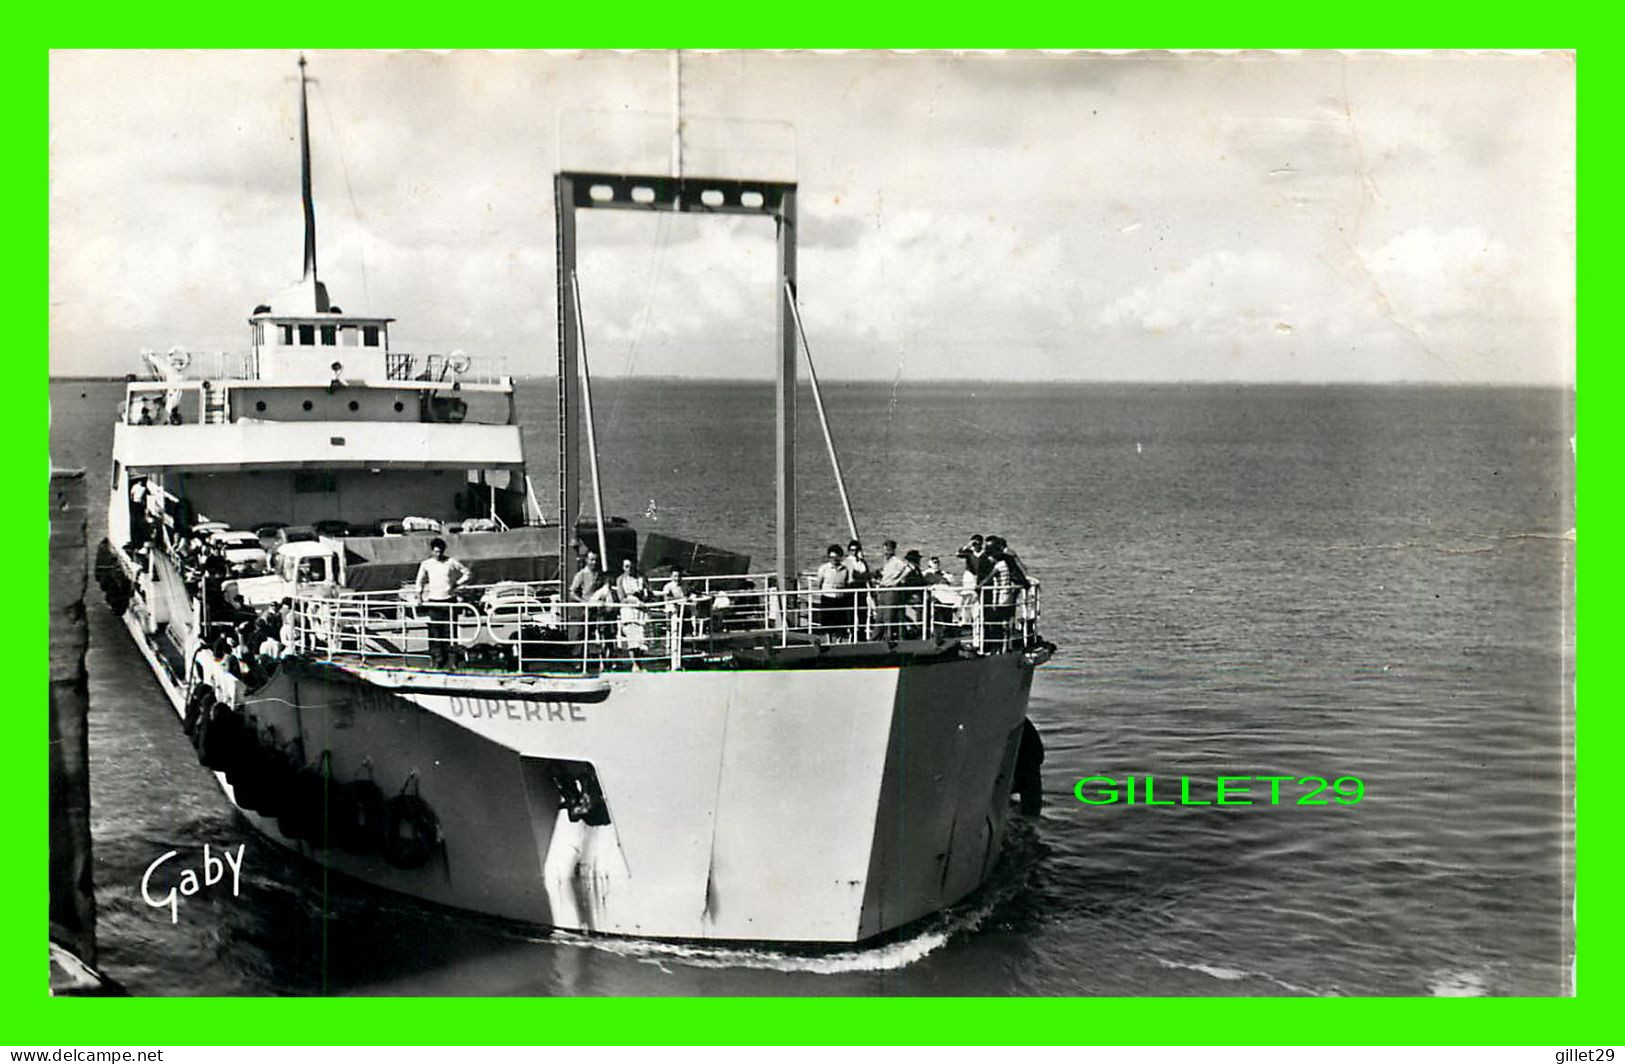 SHIP, BATEAU - " AMIRAL DUPERRE " - LE BAC - ILE DE RE (17) - CIRCULÉE EN 1961 -  EDITIONS GABY - ARTAUD PÈRE ET FILS - - Cargos